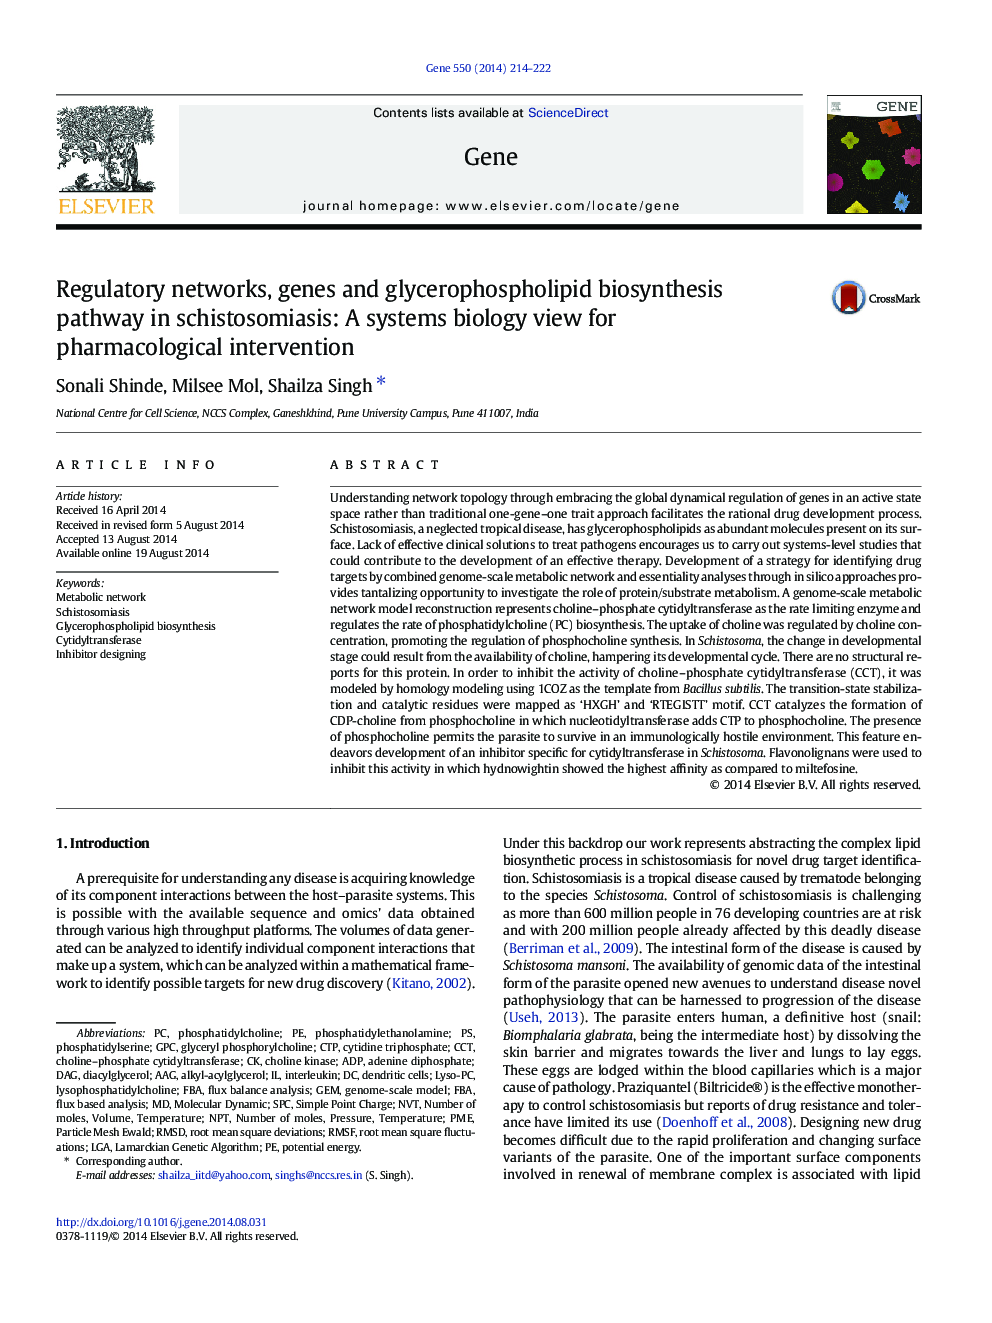 شبکه های نظارتی، ژن ها و مسیر بیوسنتز گلیسری فسفولیپید در شیستوستومیوز: یک دیدگاه بیولوژی سیستم برای مداخلات دارویی 